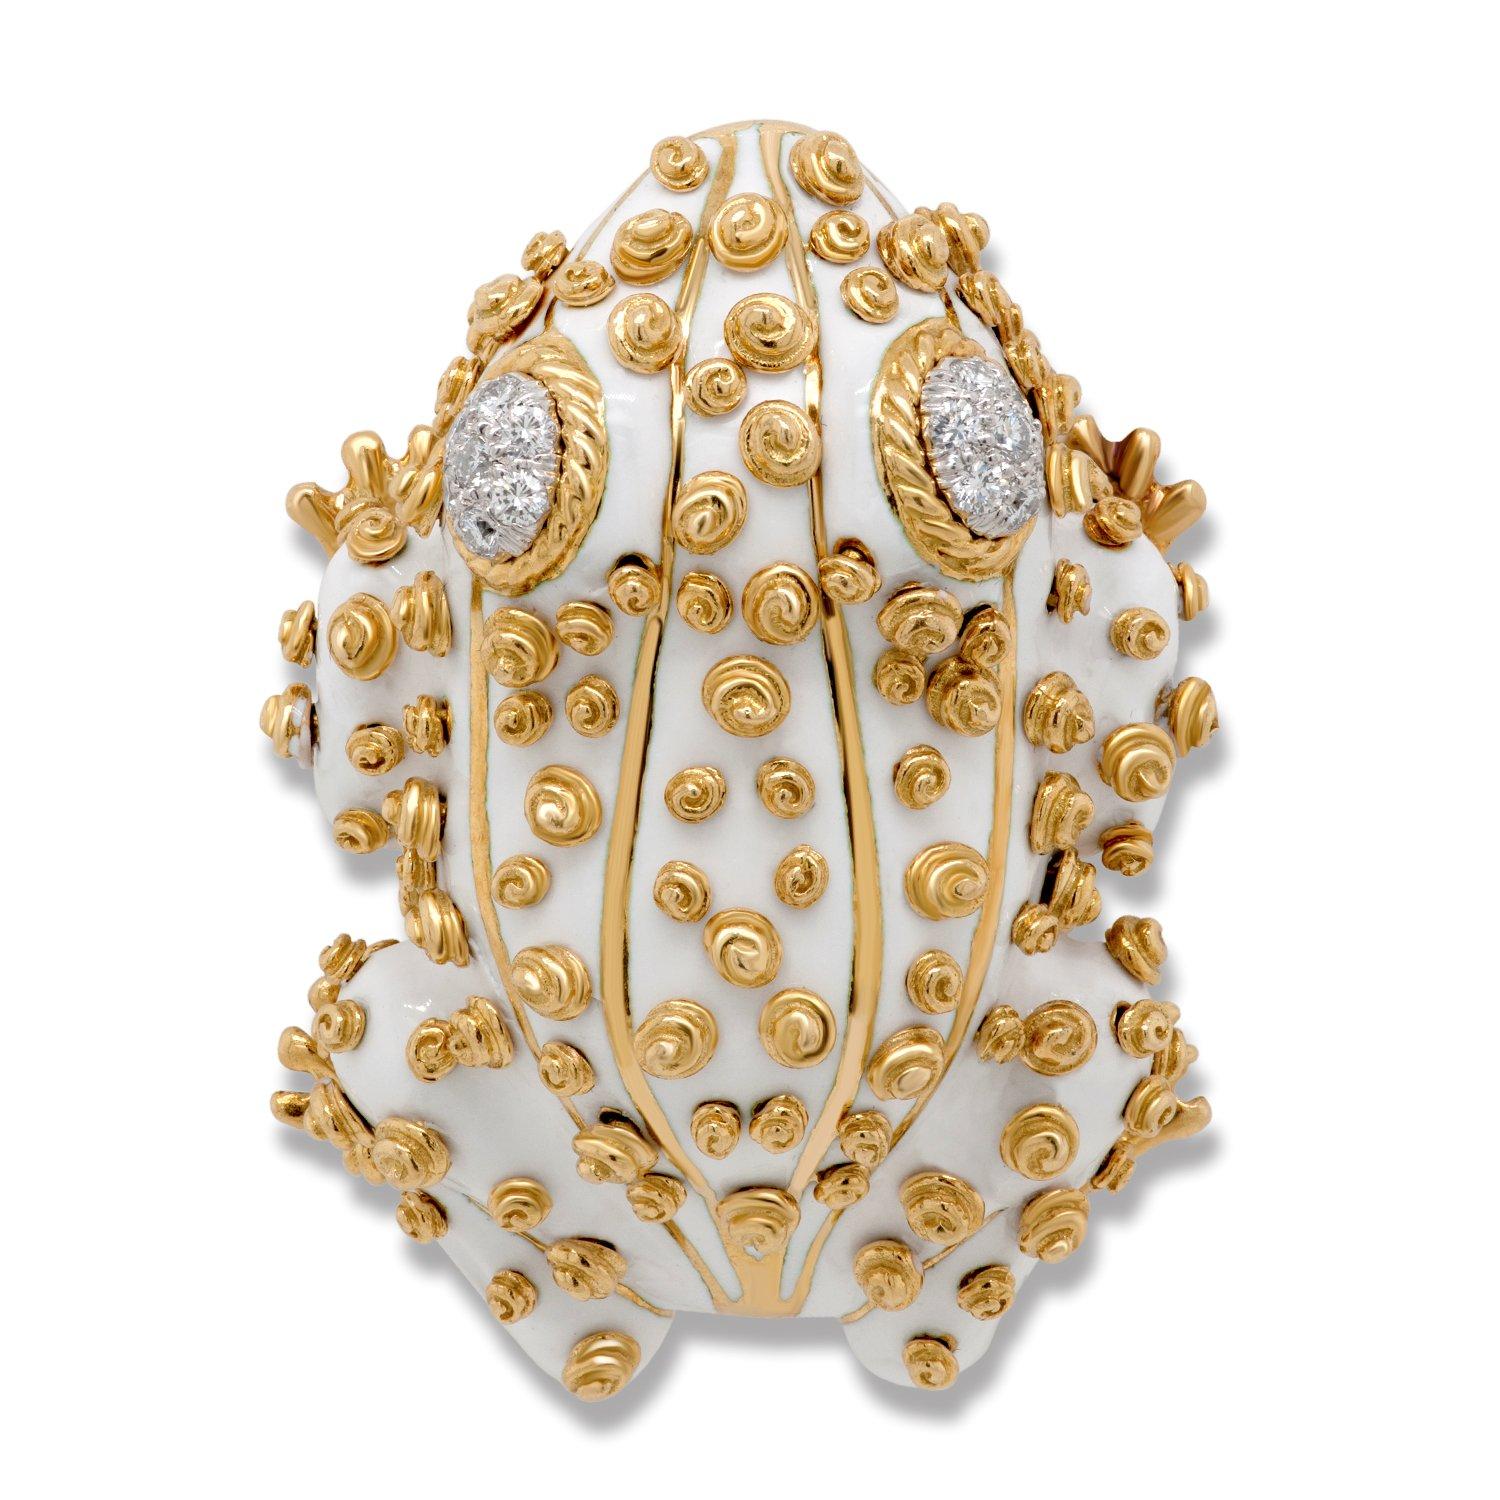 Ce set de broches iconique et fantaisiste de David Webb présente deux grenouilles vintage en émail blanc avec des yeux en diamant sertis dans de l'or jaune 18 carats, chacune accompagnée d'un certificat d'authenticité de David Webb.

La plus grande